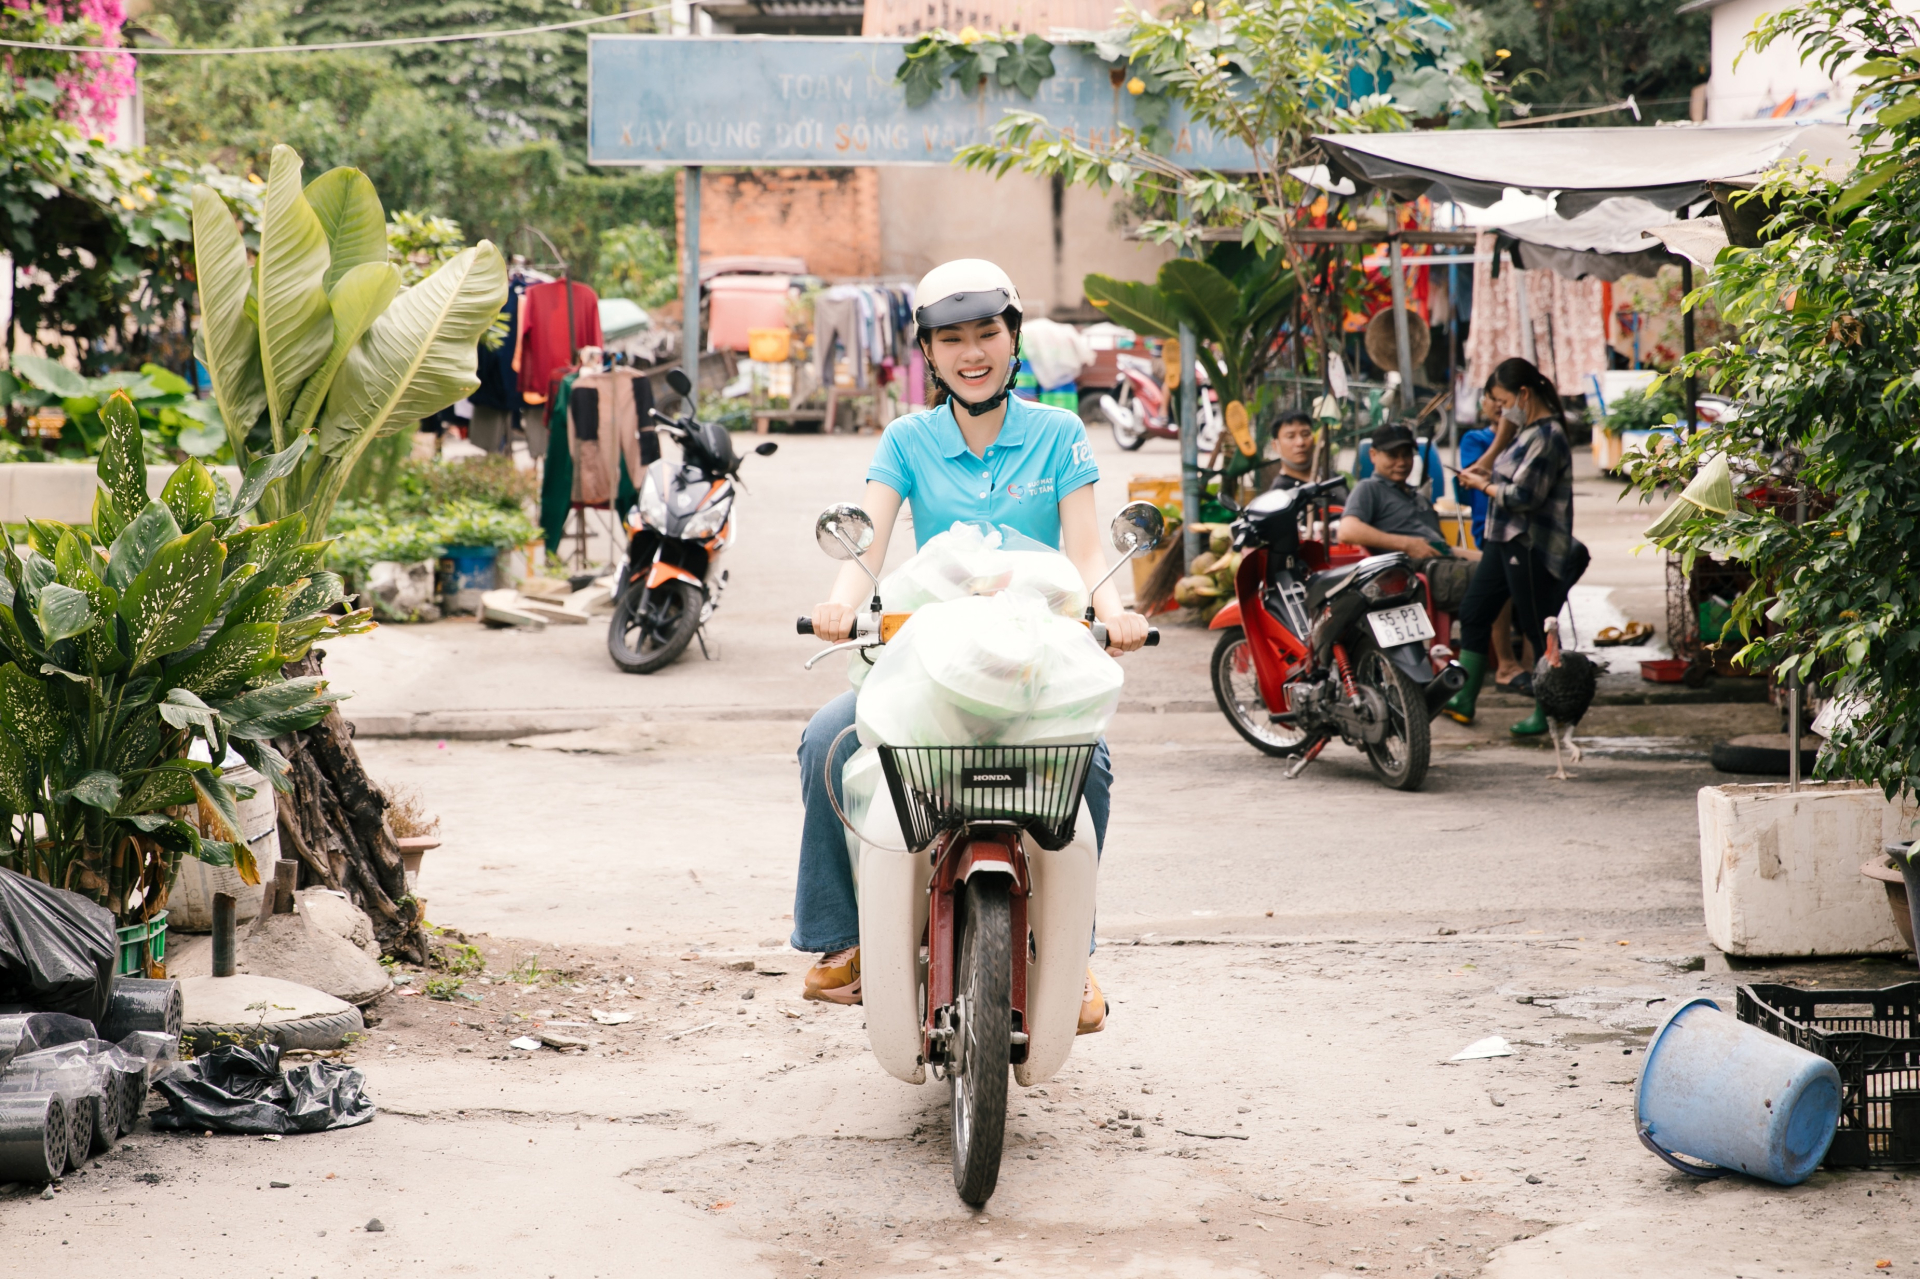 Hoa hậu Mai Phương tự tay nấu ăn, chạy xe máy giao cơm cho bệnh nhân nghèo - ảnh 5